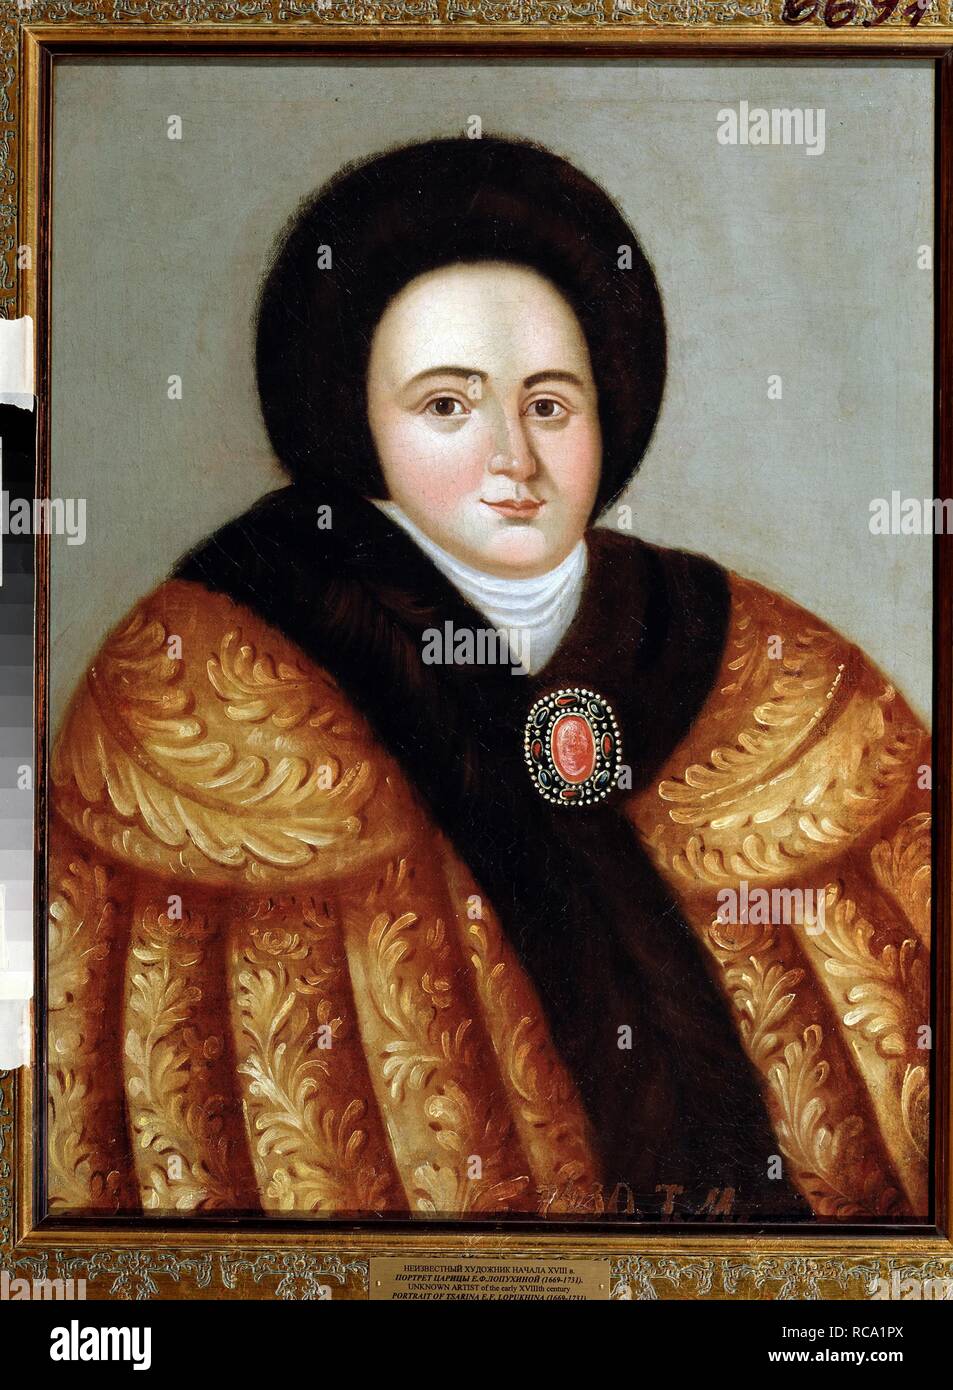 Portrait of Tsarina Evdokiya Feodorovna Lopukhina (1669-1731), the wife of tsar Peter I of Russia. Museum: Regional Art Gallery, Tver. Author: ANONYMOUS. Stock Photo